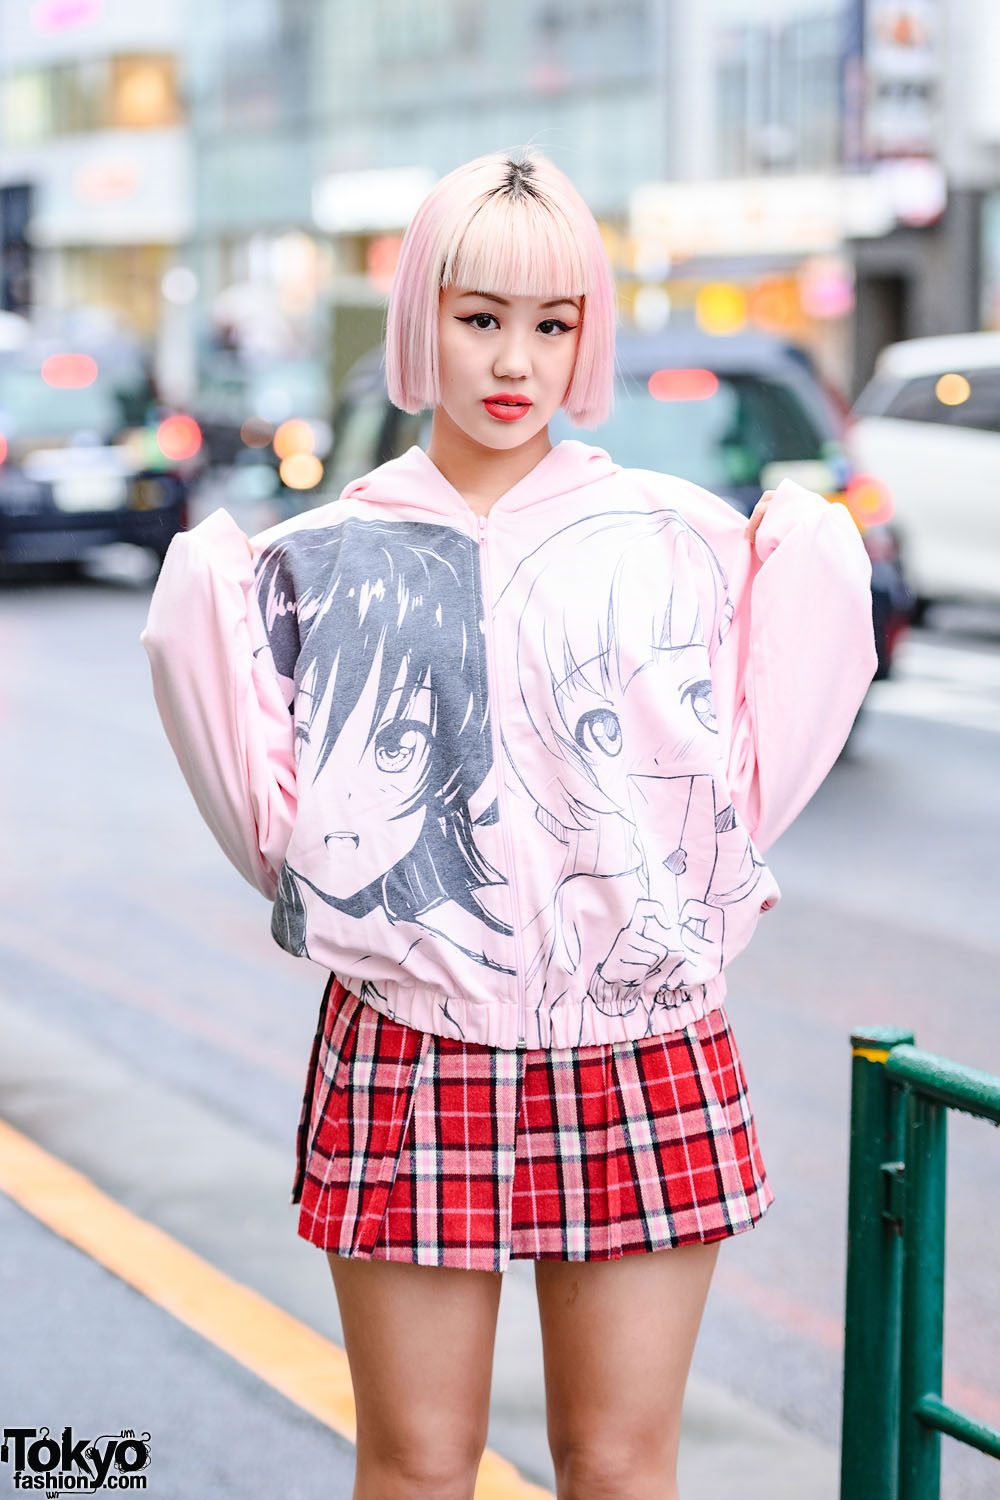 Japanese Pink Bob Hairstyle, Manga Girls Hoodie, Plaid Mini Skirt & Pink  Platform Shoes in Harajuku – Tokyo Fashion